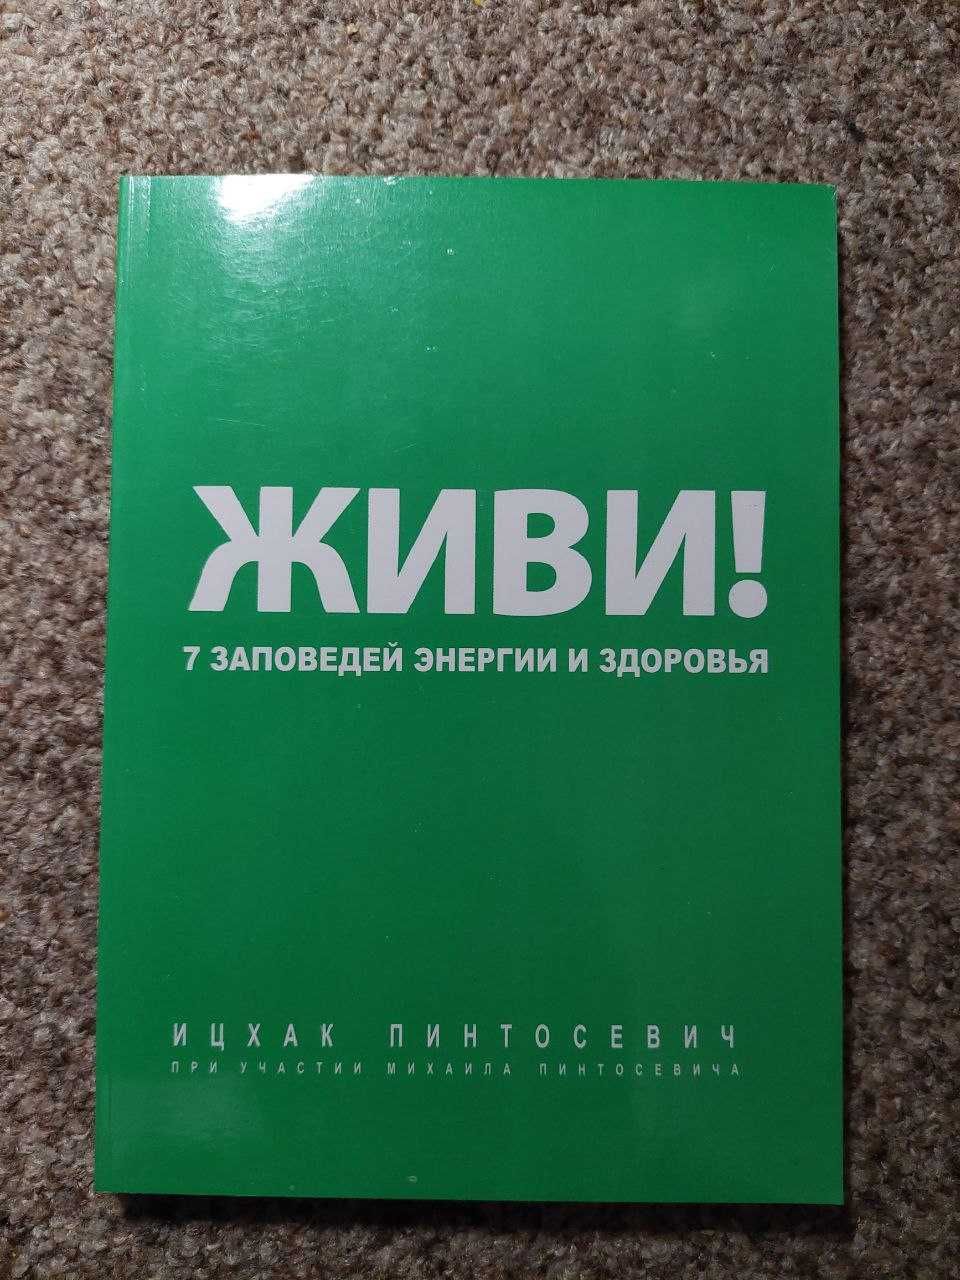 Ицхак Пинтосевич (книги для бизнеса и саморазвития)